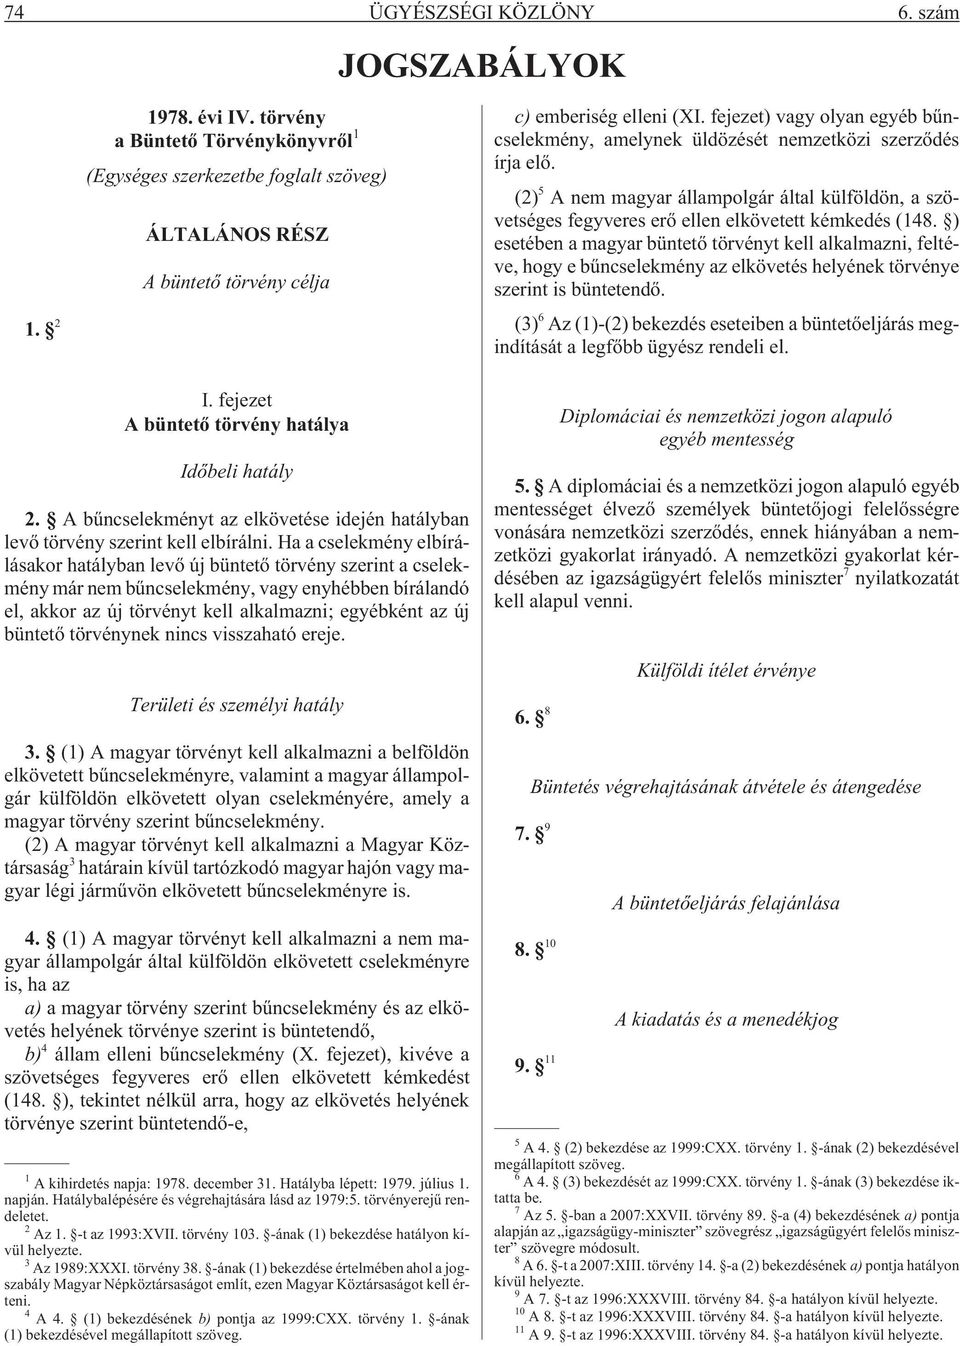 ) esetében a magyar büntetõ törvényt kell alkalmazni, feltéve, hogy e bûncselekmény az elkövetés helyének törvénye szerint is büntetendõ.